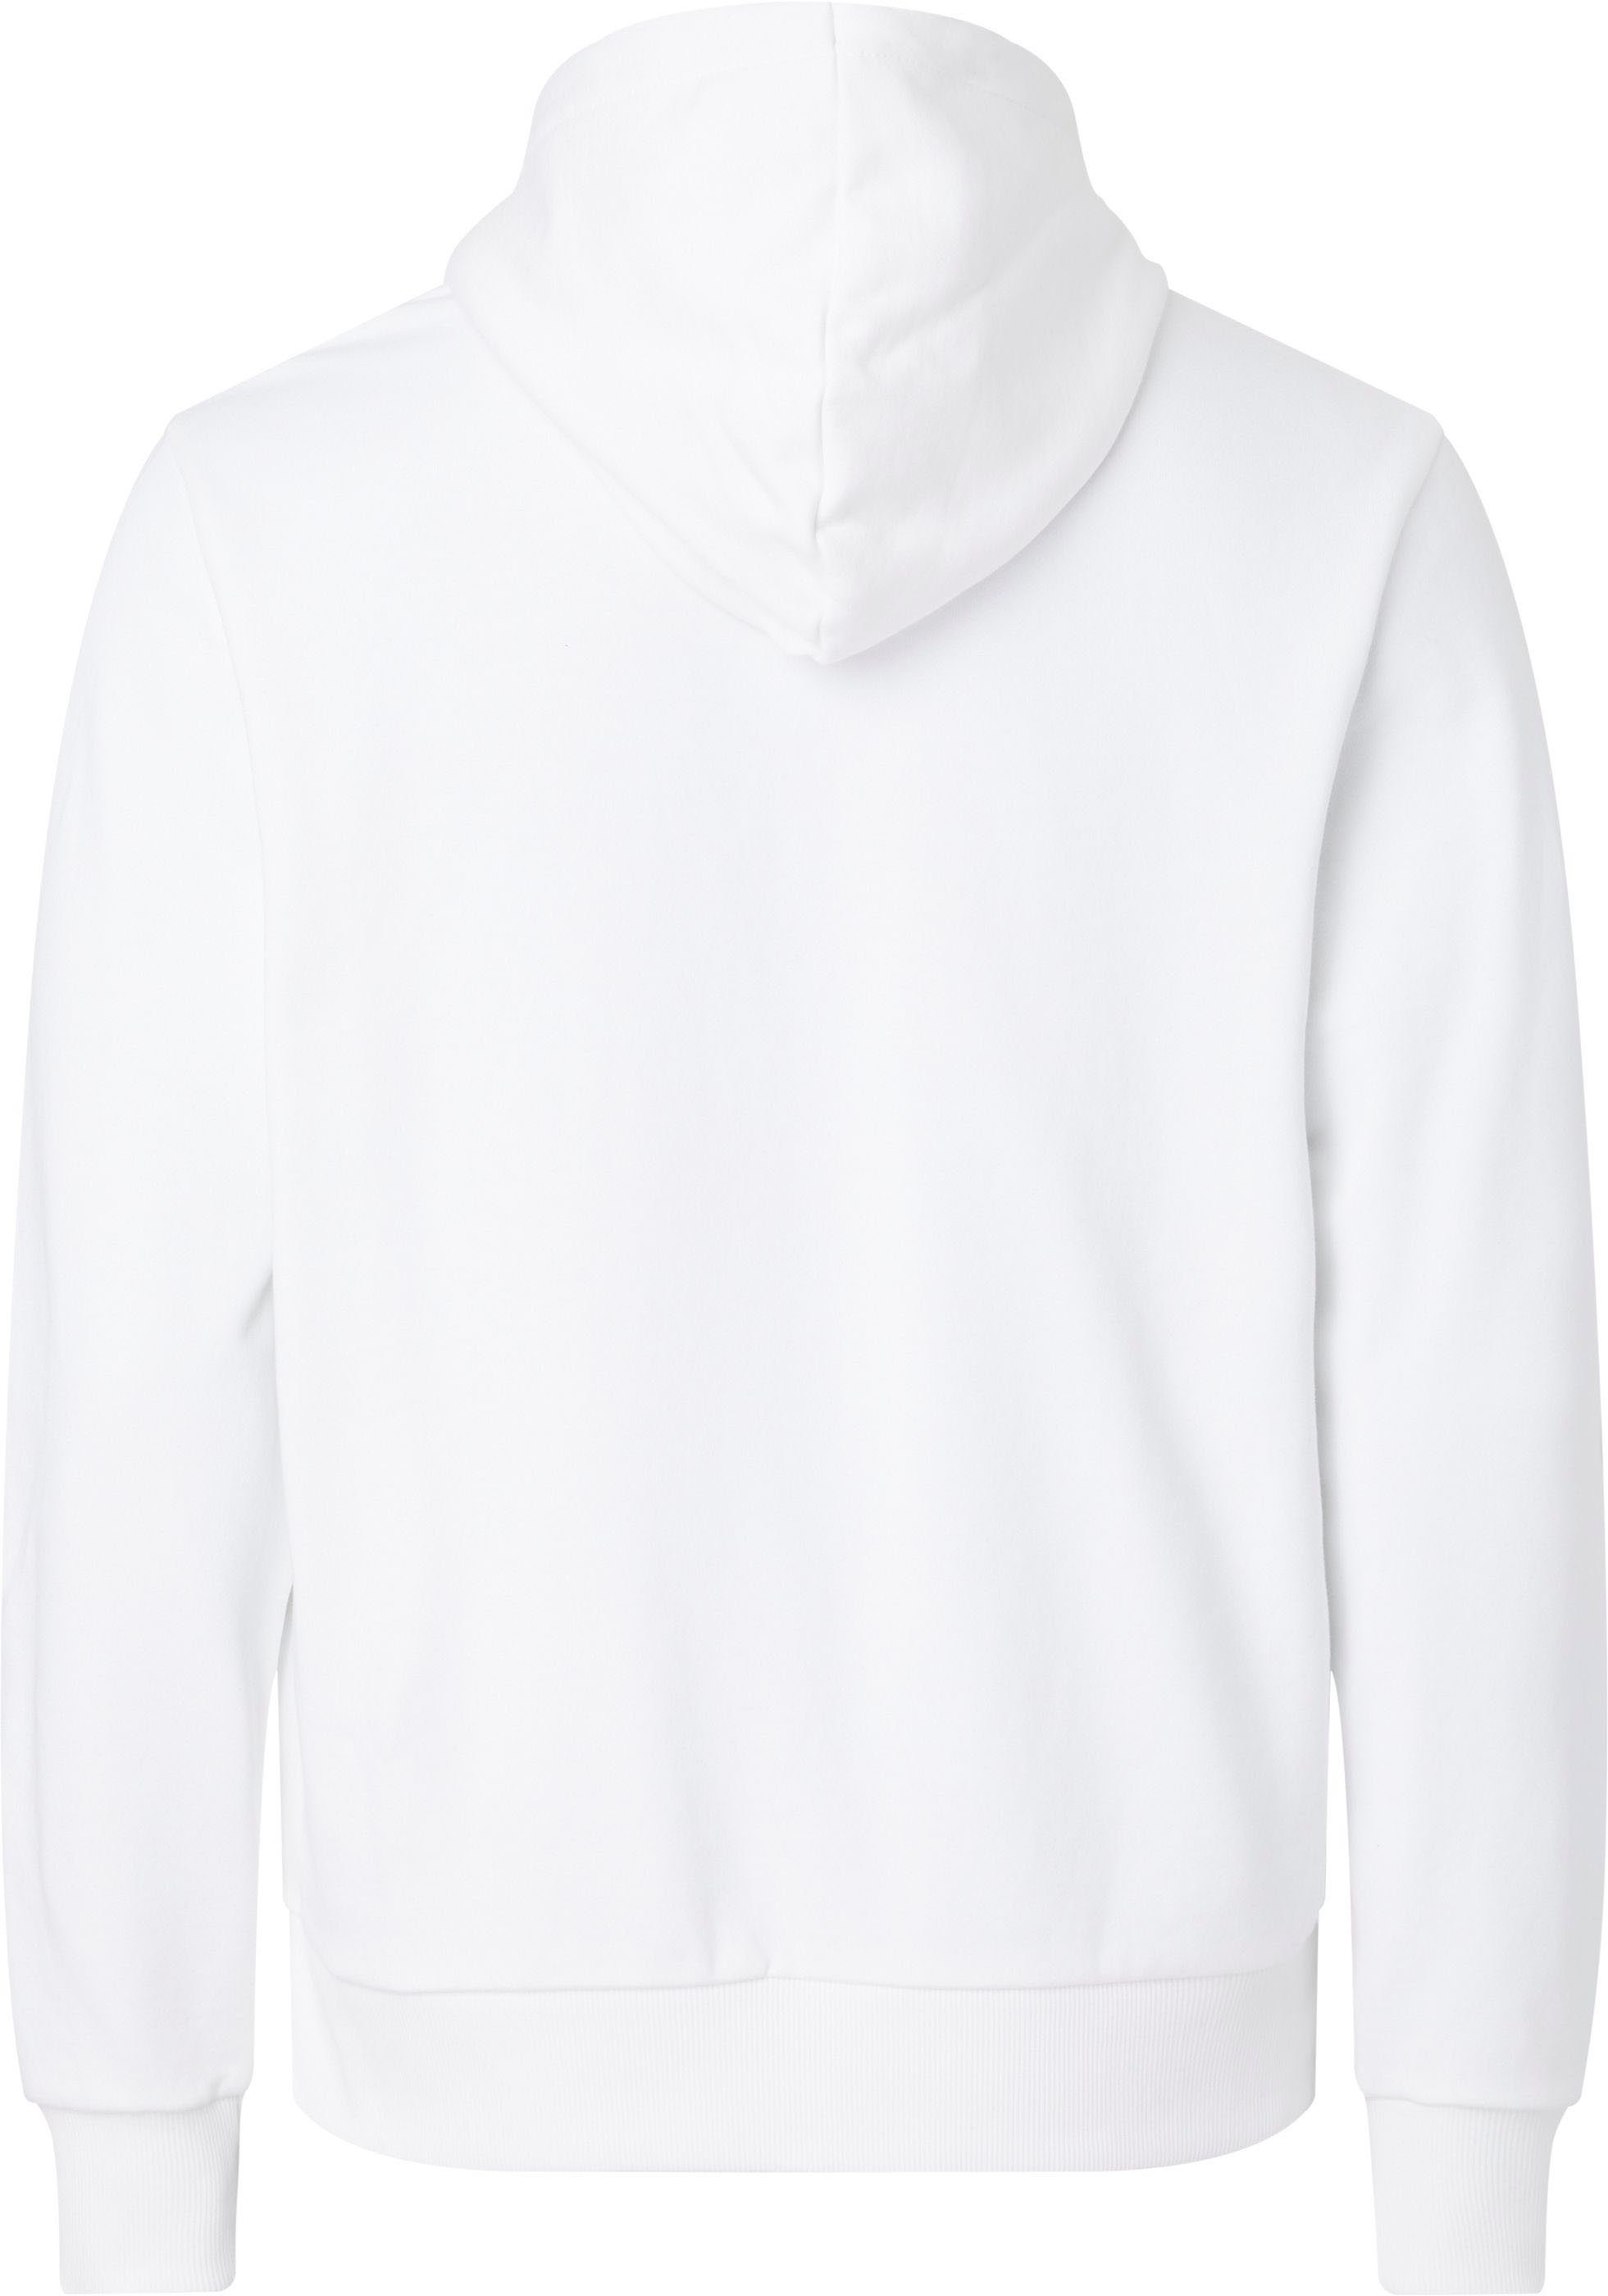 BT-BOX Bright Calvin LOGO HOODIE mit Klein White STRIPED Big&Tall Logoschriftzug Kapuzensweatshirt